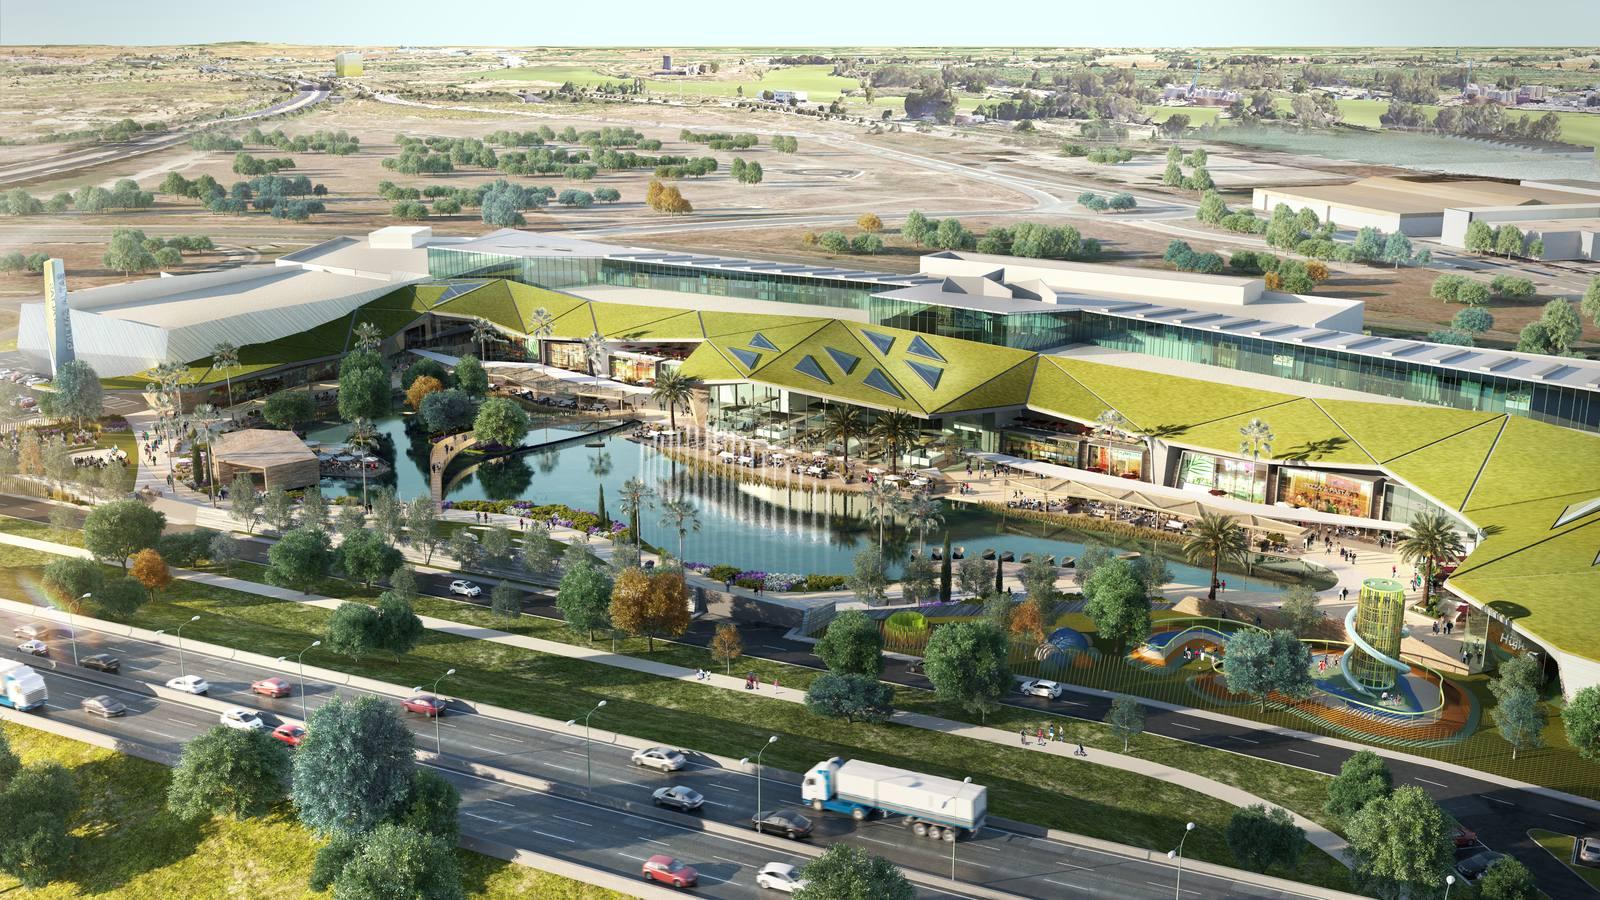 Comienzan las obras del centro comercial de Palmas Altas, que abrirá en 2019